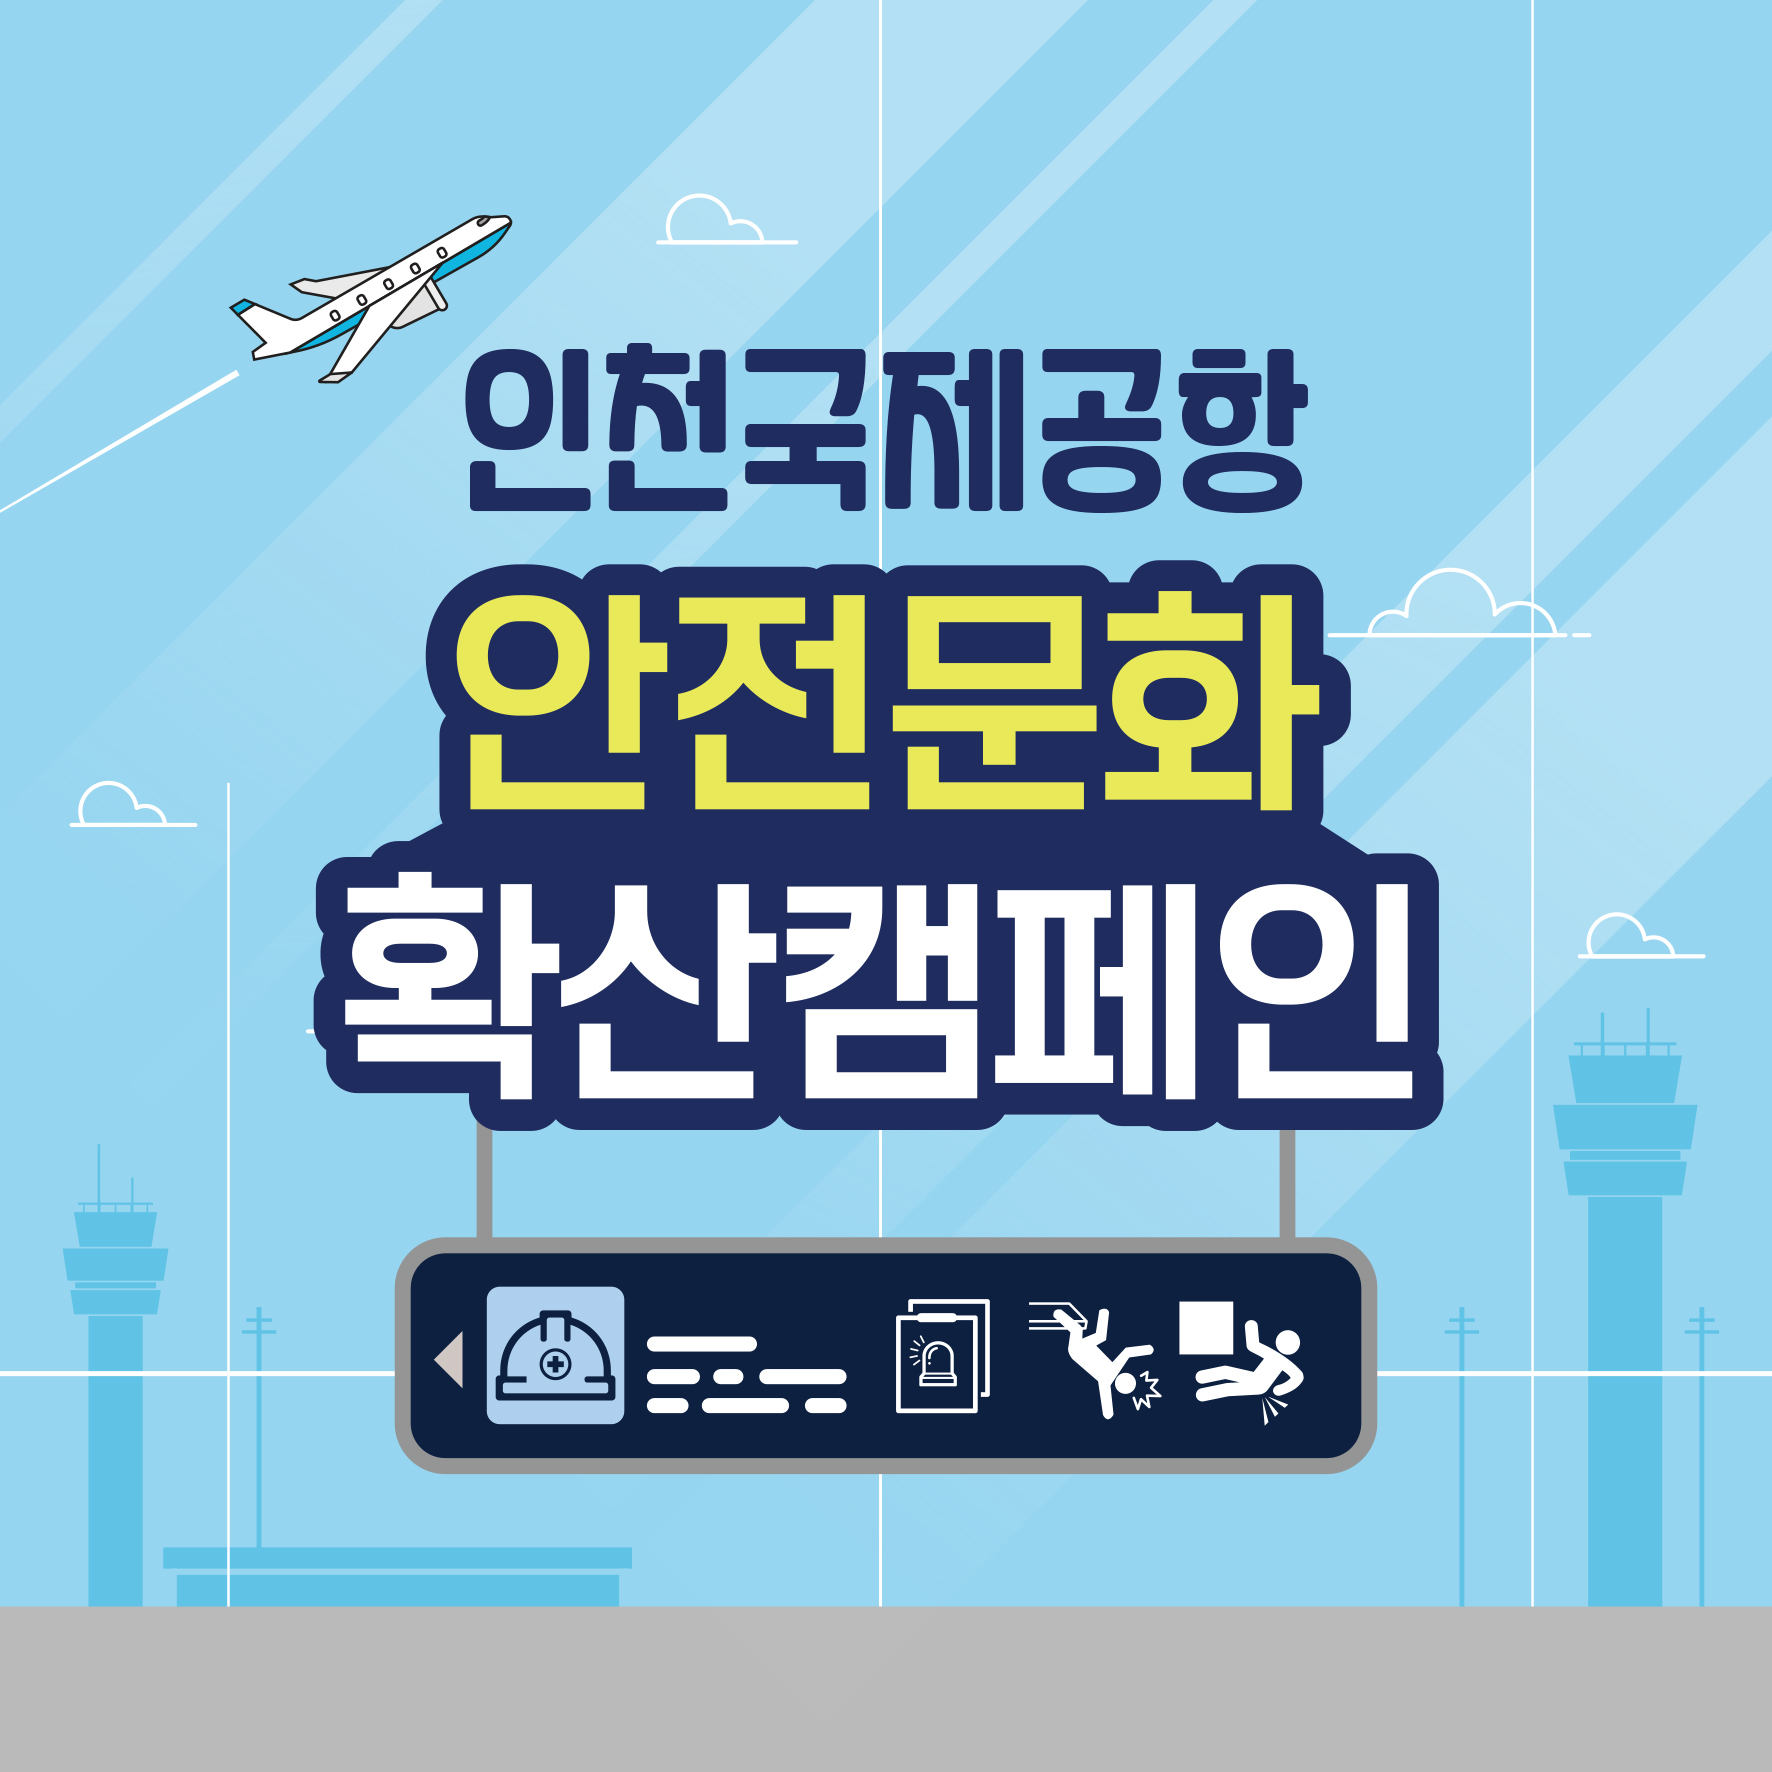 [인천] 인천국제공항 안전문화 확산 캠페인